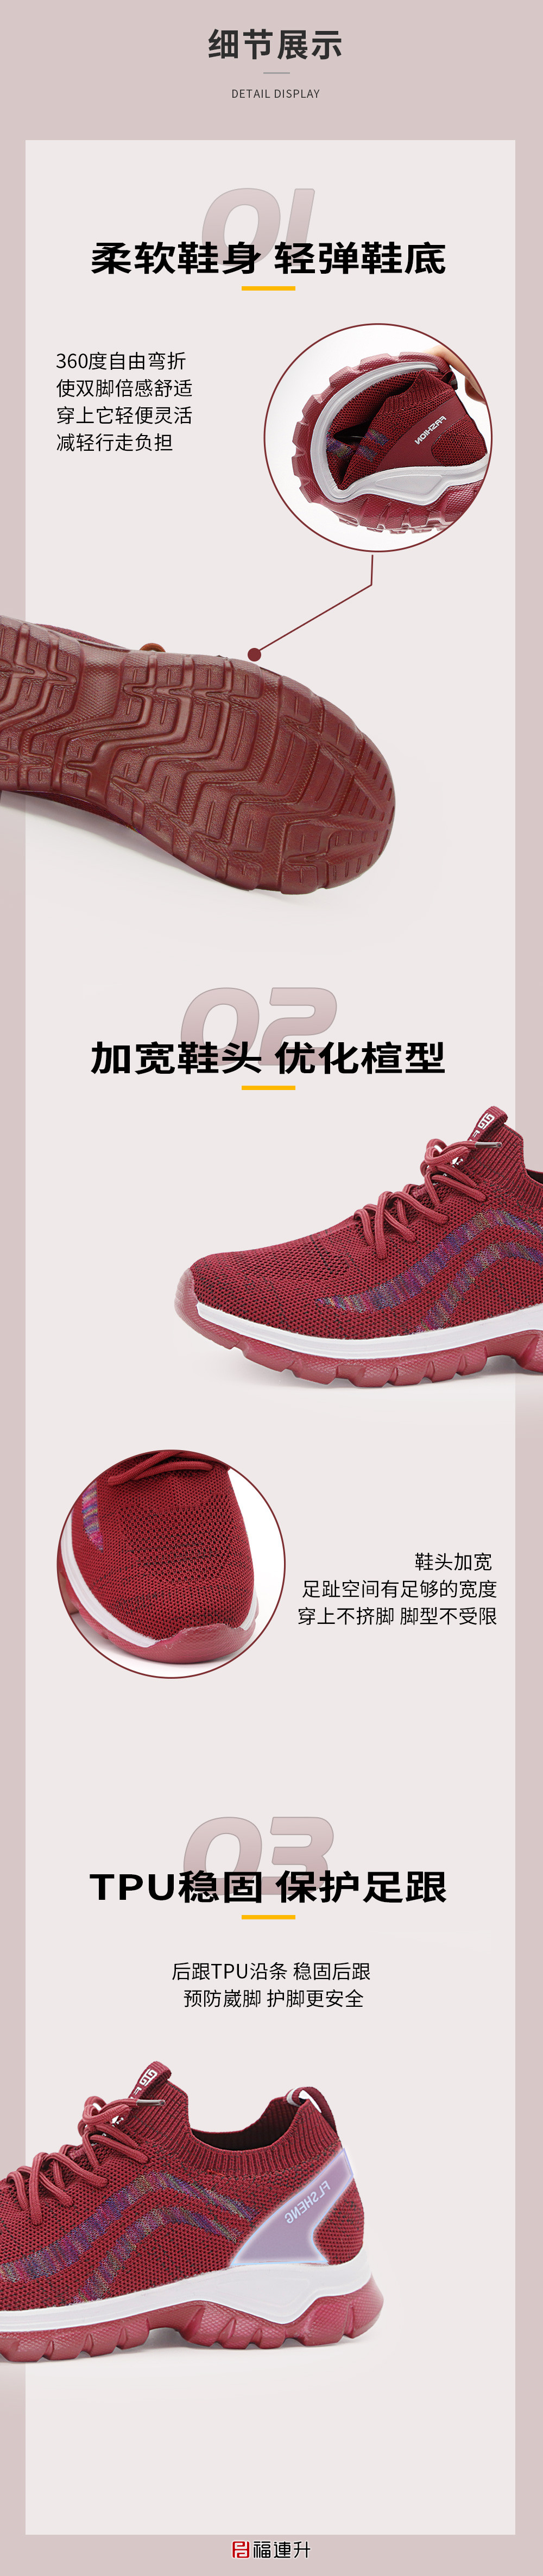 老北京布鞋女士休閑運動漫步鞋鞋棉麻舒適透氣中年鞋圖片